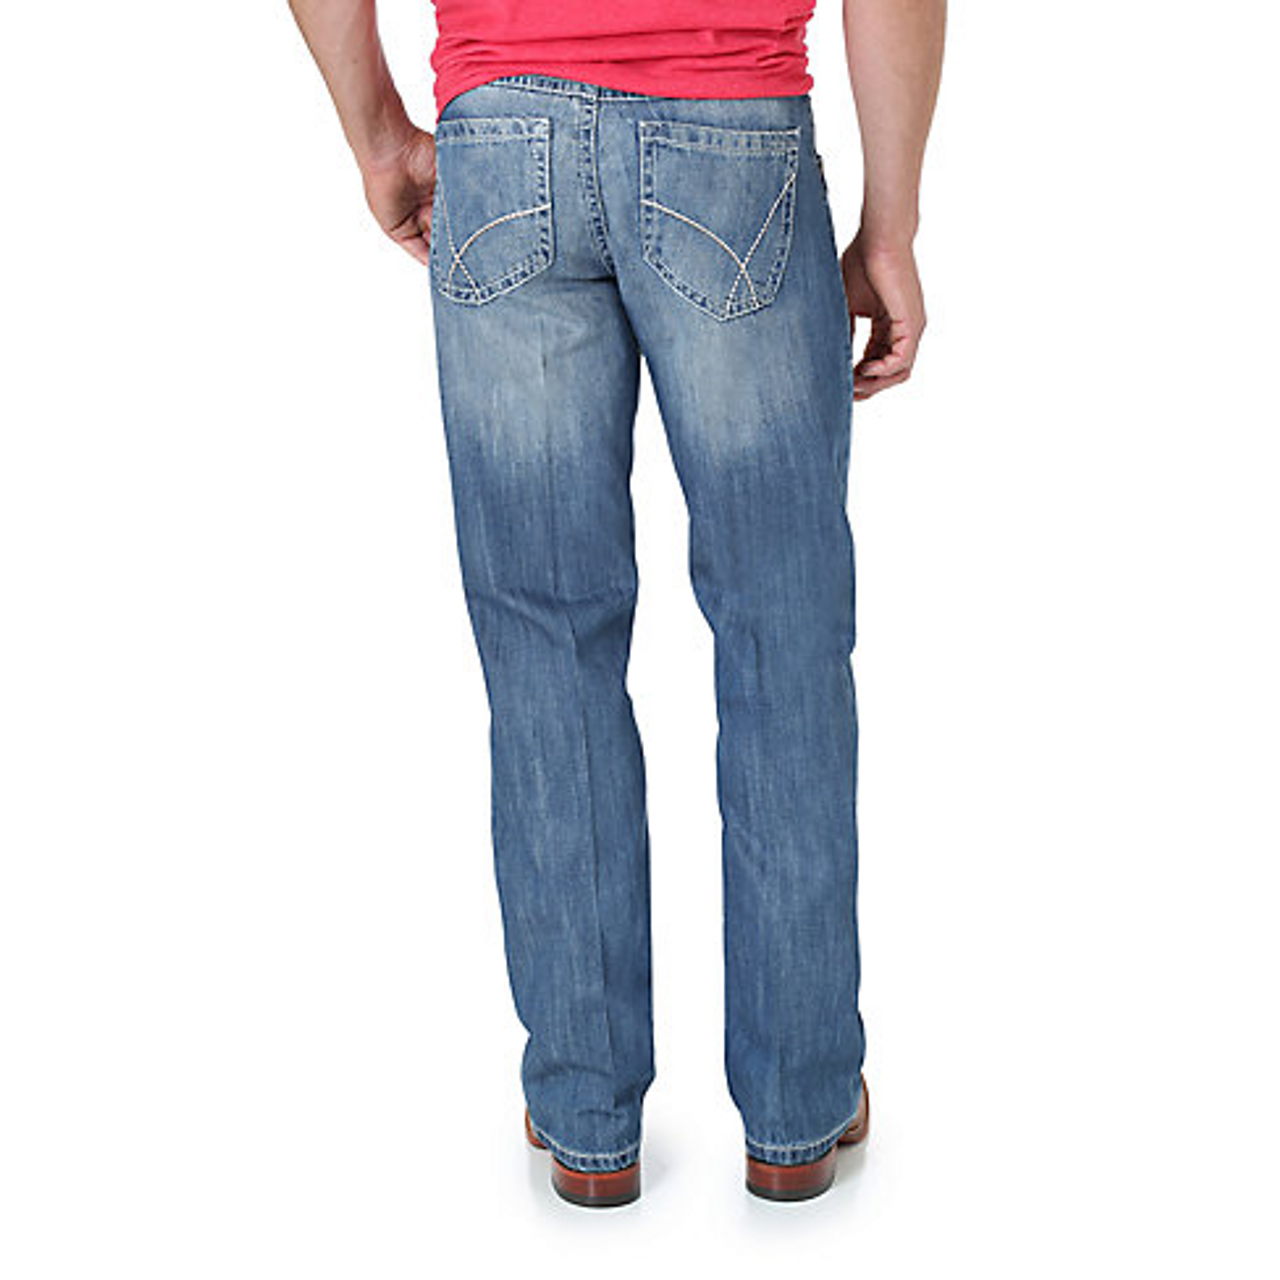 træt Geologi krybdyr Wrangler Men's Jeans - 20X No. 42 Vintage Bootcut Jean - Light Blue -  Billy's Western Wear